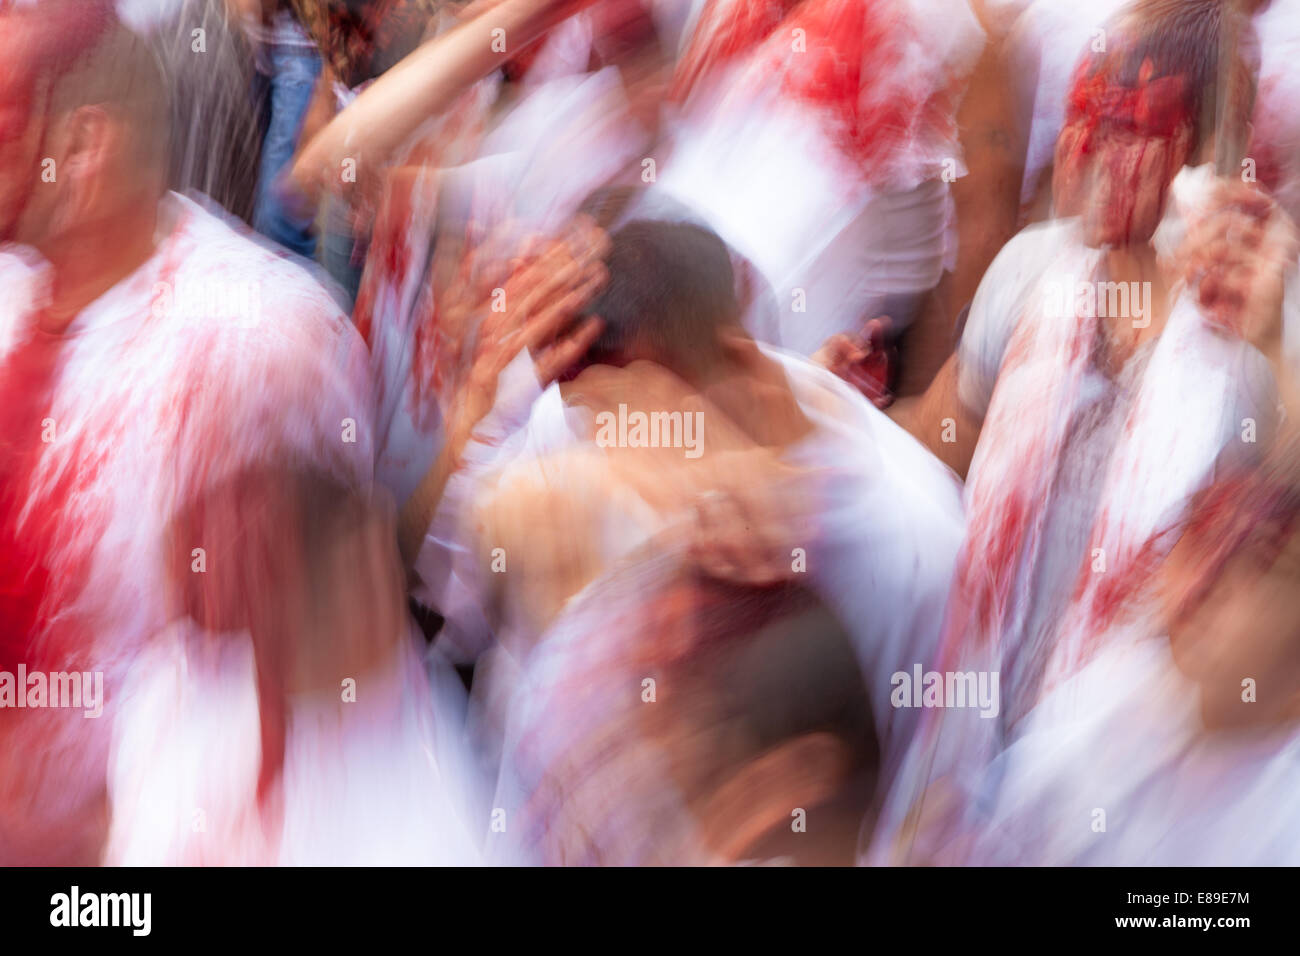 Les musulmans chiites, couverts dans leur propre sang, auto-flagellating, commémorant le jour de l'Achoura à Nabatieh, Liban. Banque D'Images